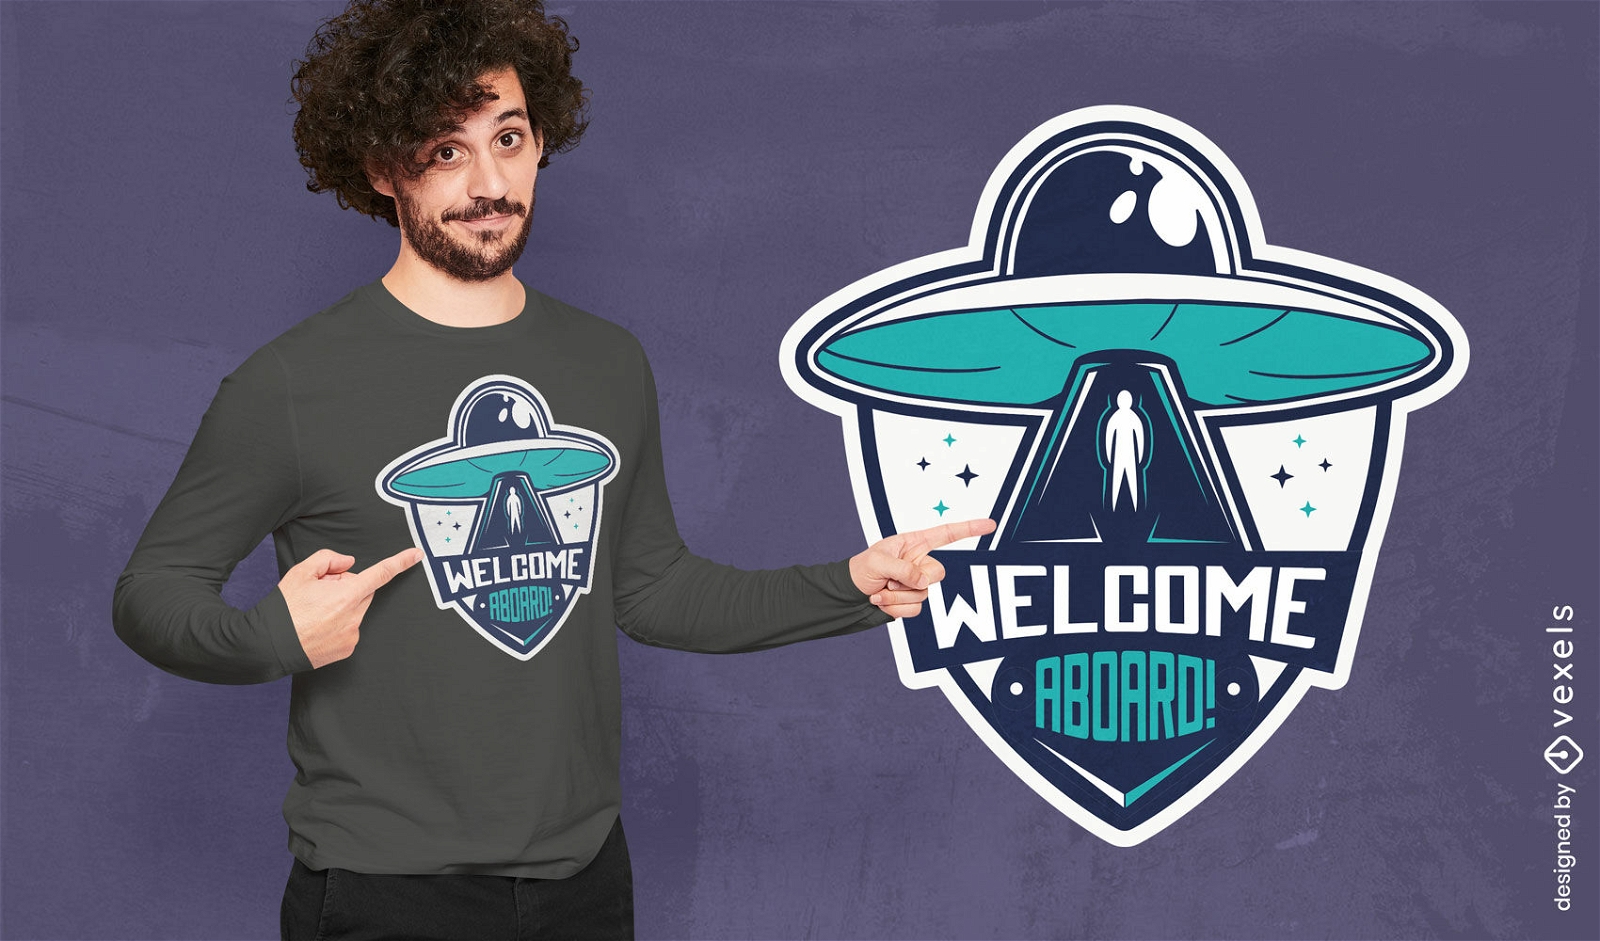 Willkommen an Bord des außerirdischen Raumschiff-T-Shirt-Designs